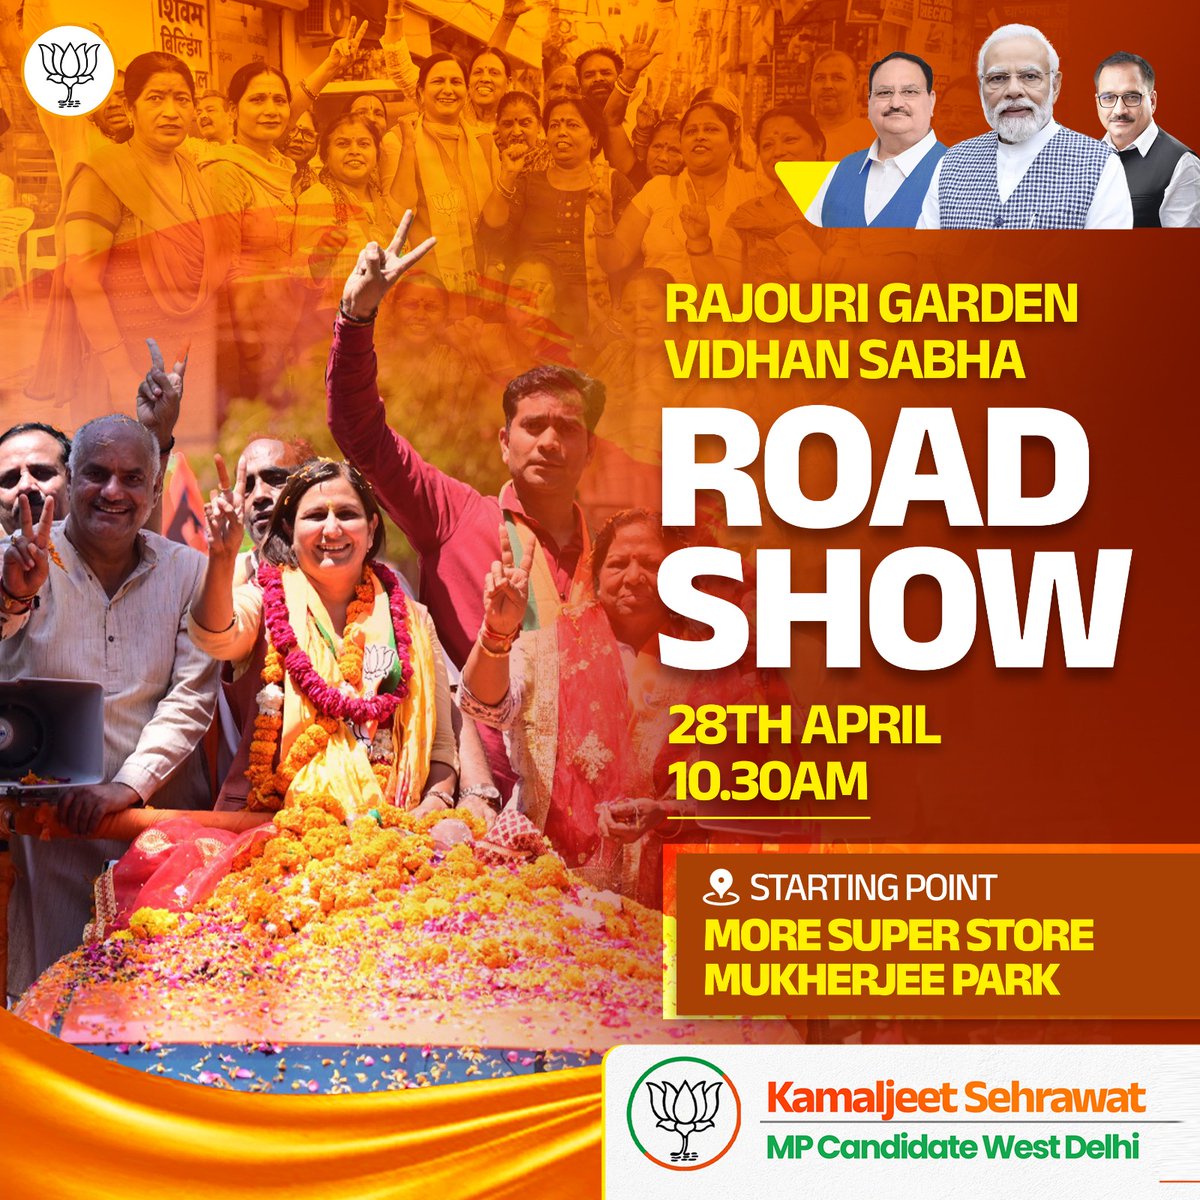 रोड शो राजौरी गार्डन विधानसभा दिनांक - 28 अप्रैल 2024 समय- सुबह 10:30 बजे प्रारंभ होने का स्थान - मोरे सुपर स्टोर, मुखर्जी पार्क पश्चिमी दिल्ली की देवतुल्य जनता एवं भारतीय जनता पार्टी के सभी सम्मानित कार्यकर्ता एवं पदाधिकारी सादर आमंत्रित हैं। #AbkiBaar400Par #ModiKaParivar…